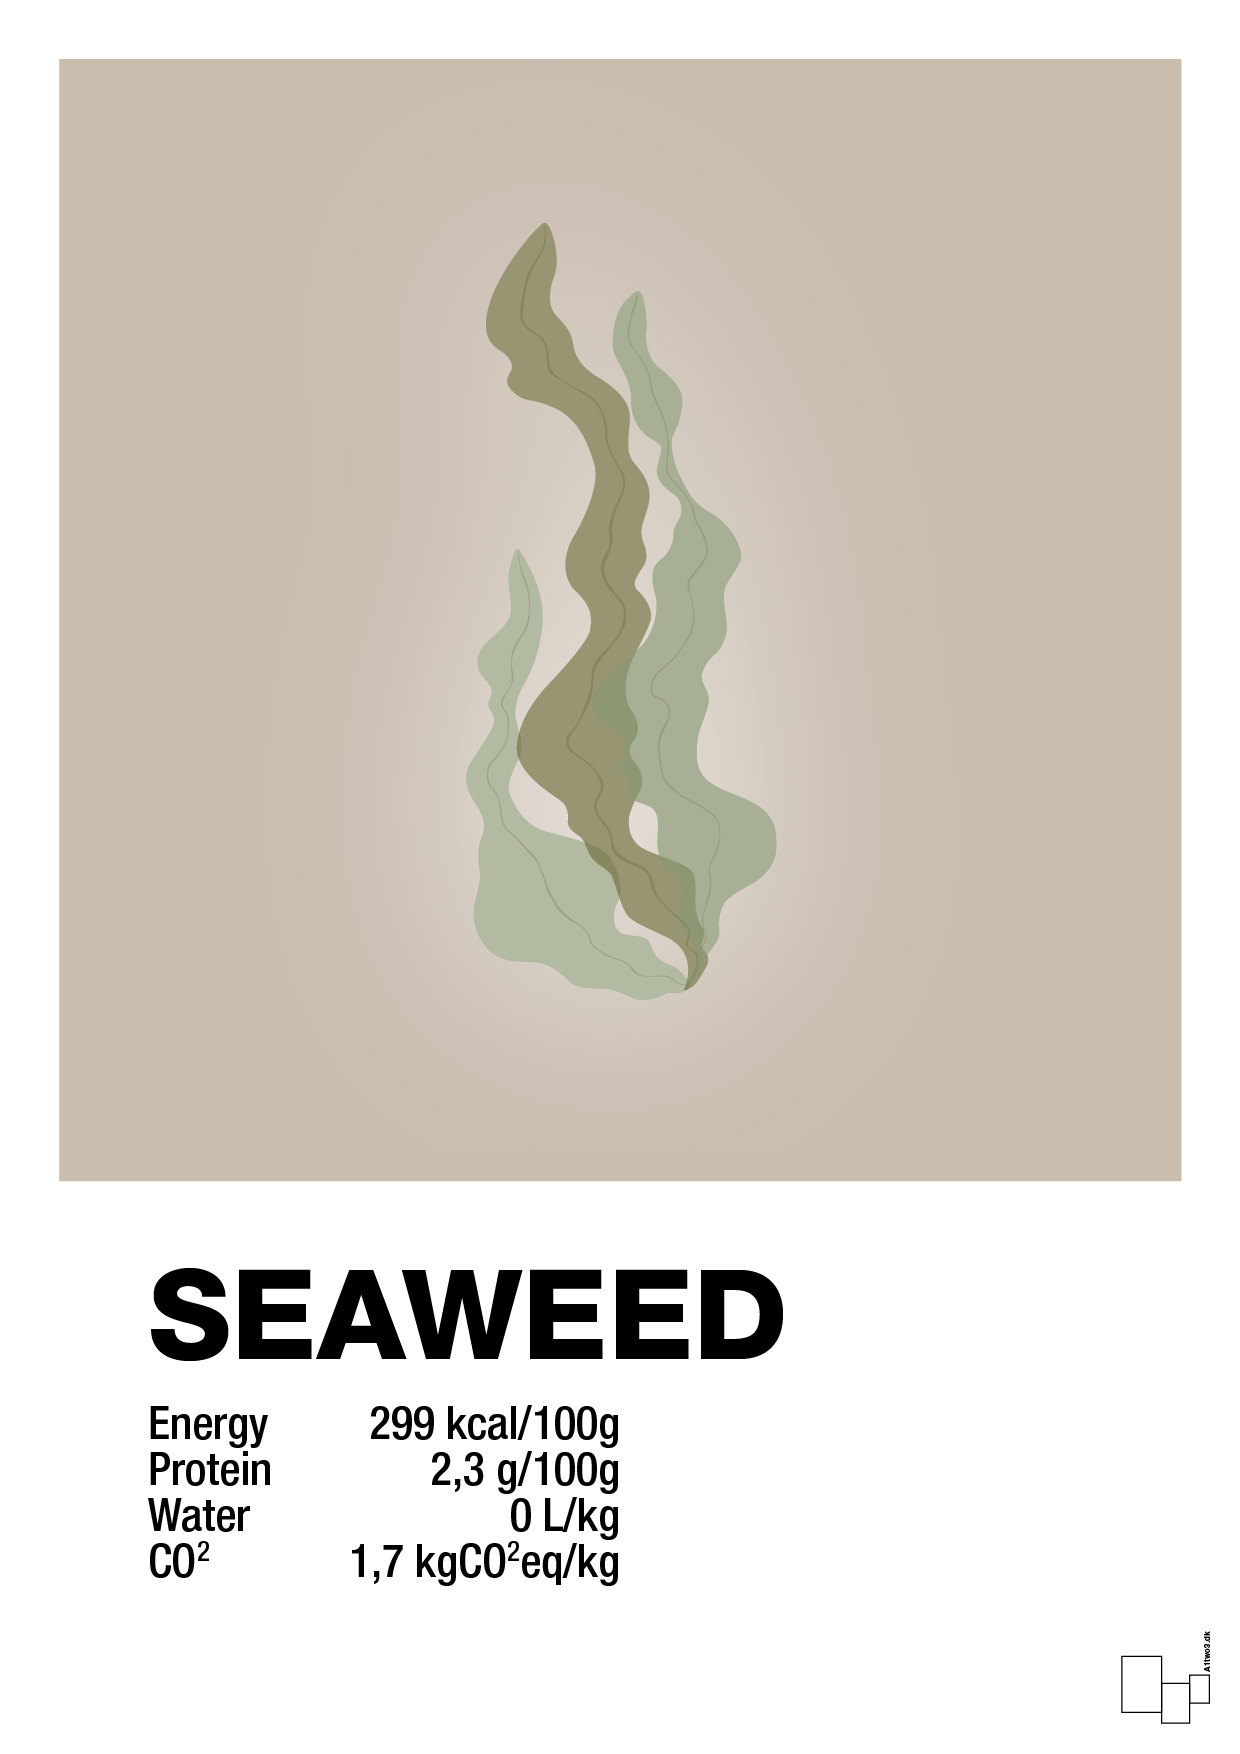 seaweed nutrition og miljø - Plakat med Mad & Drikke i Creamy Mushroom